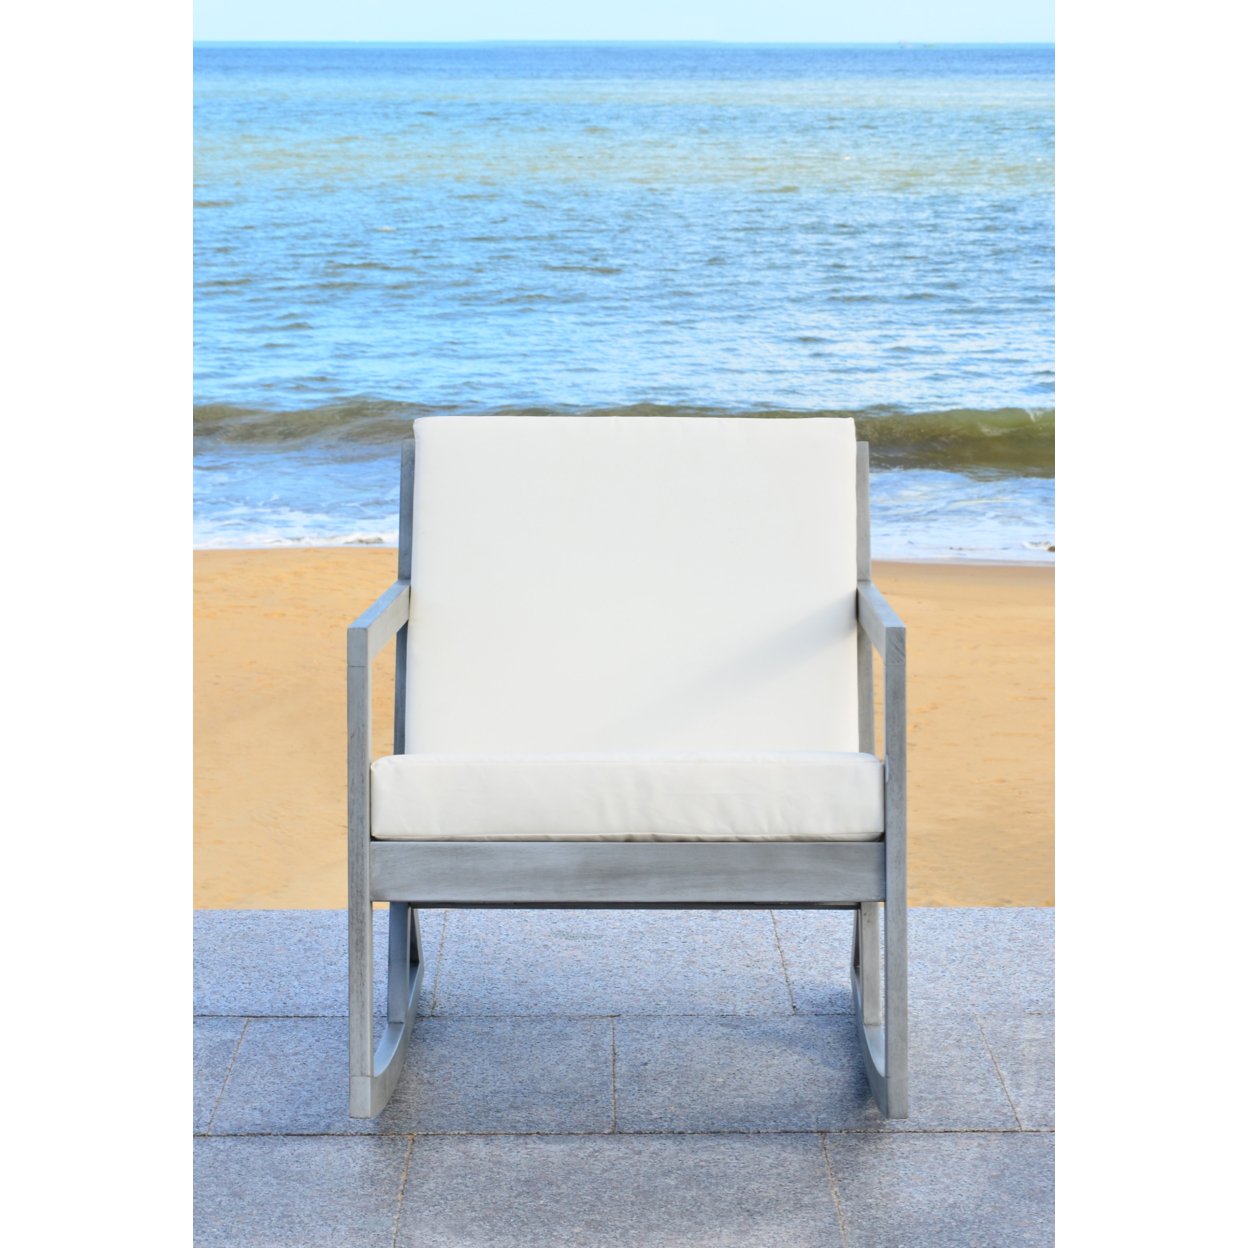 SAFAVIEH Outdoor Collection Vernon Rocking Chair Grey/Beige